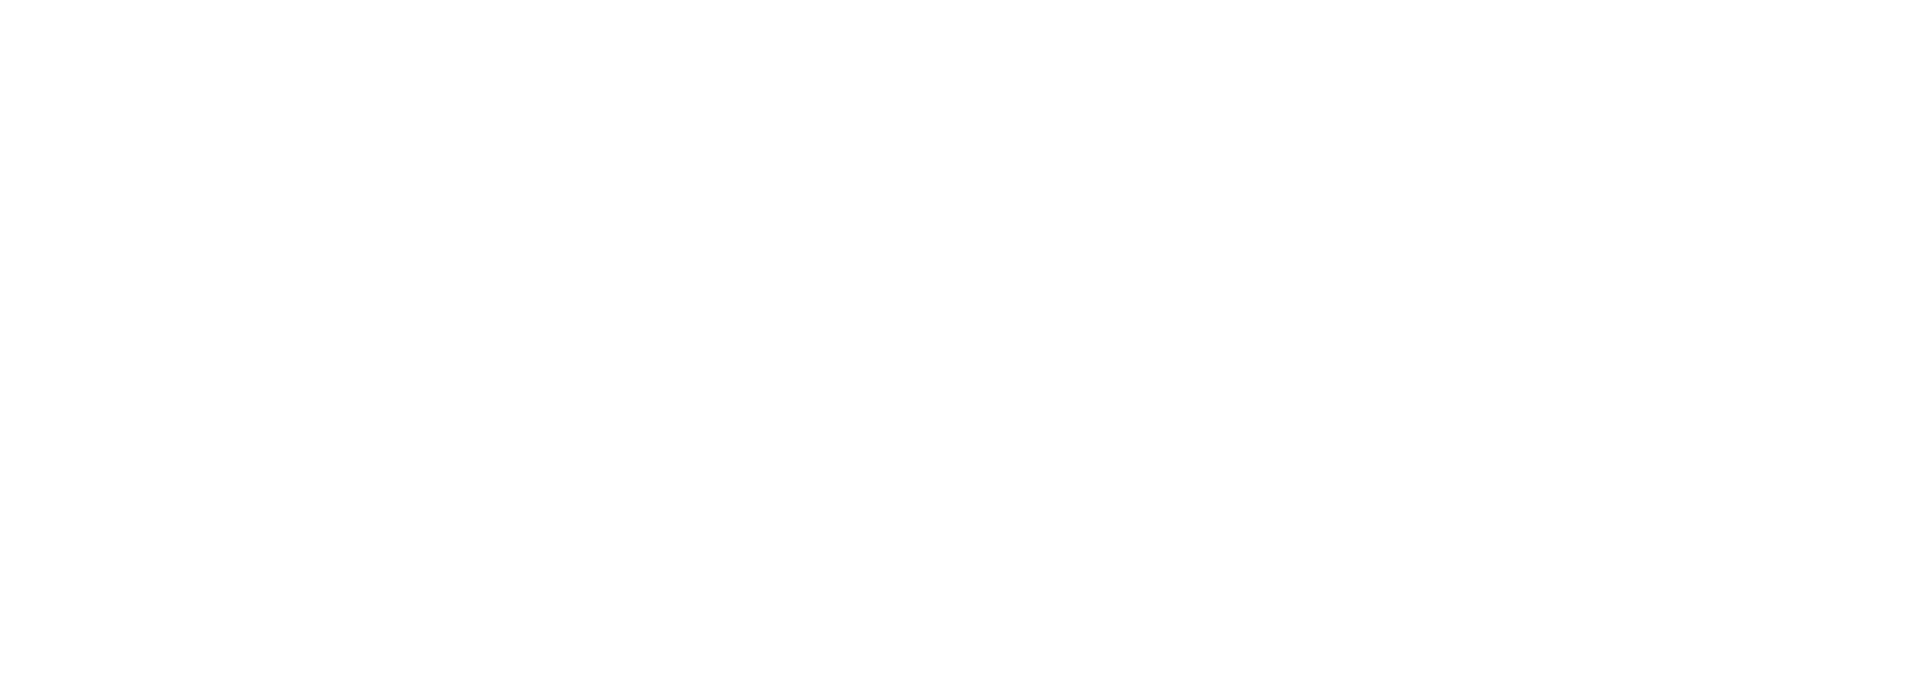 rebel one logo vector